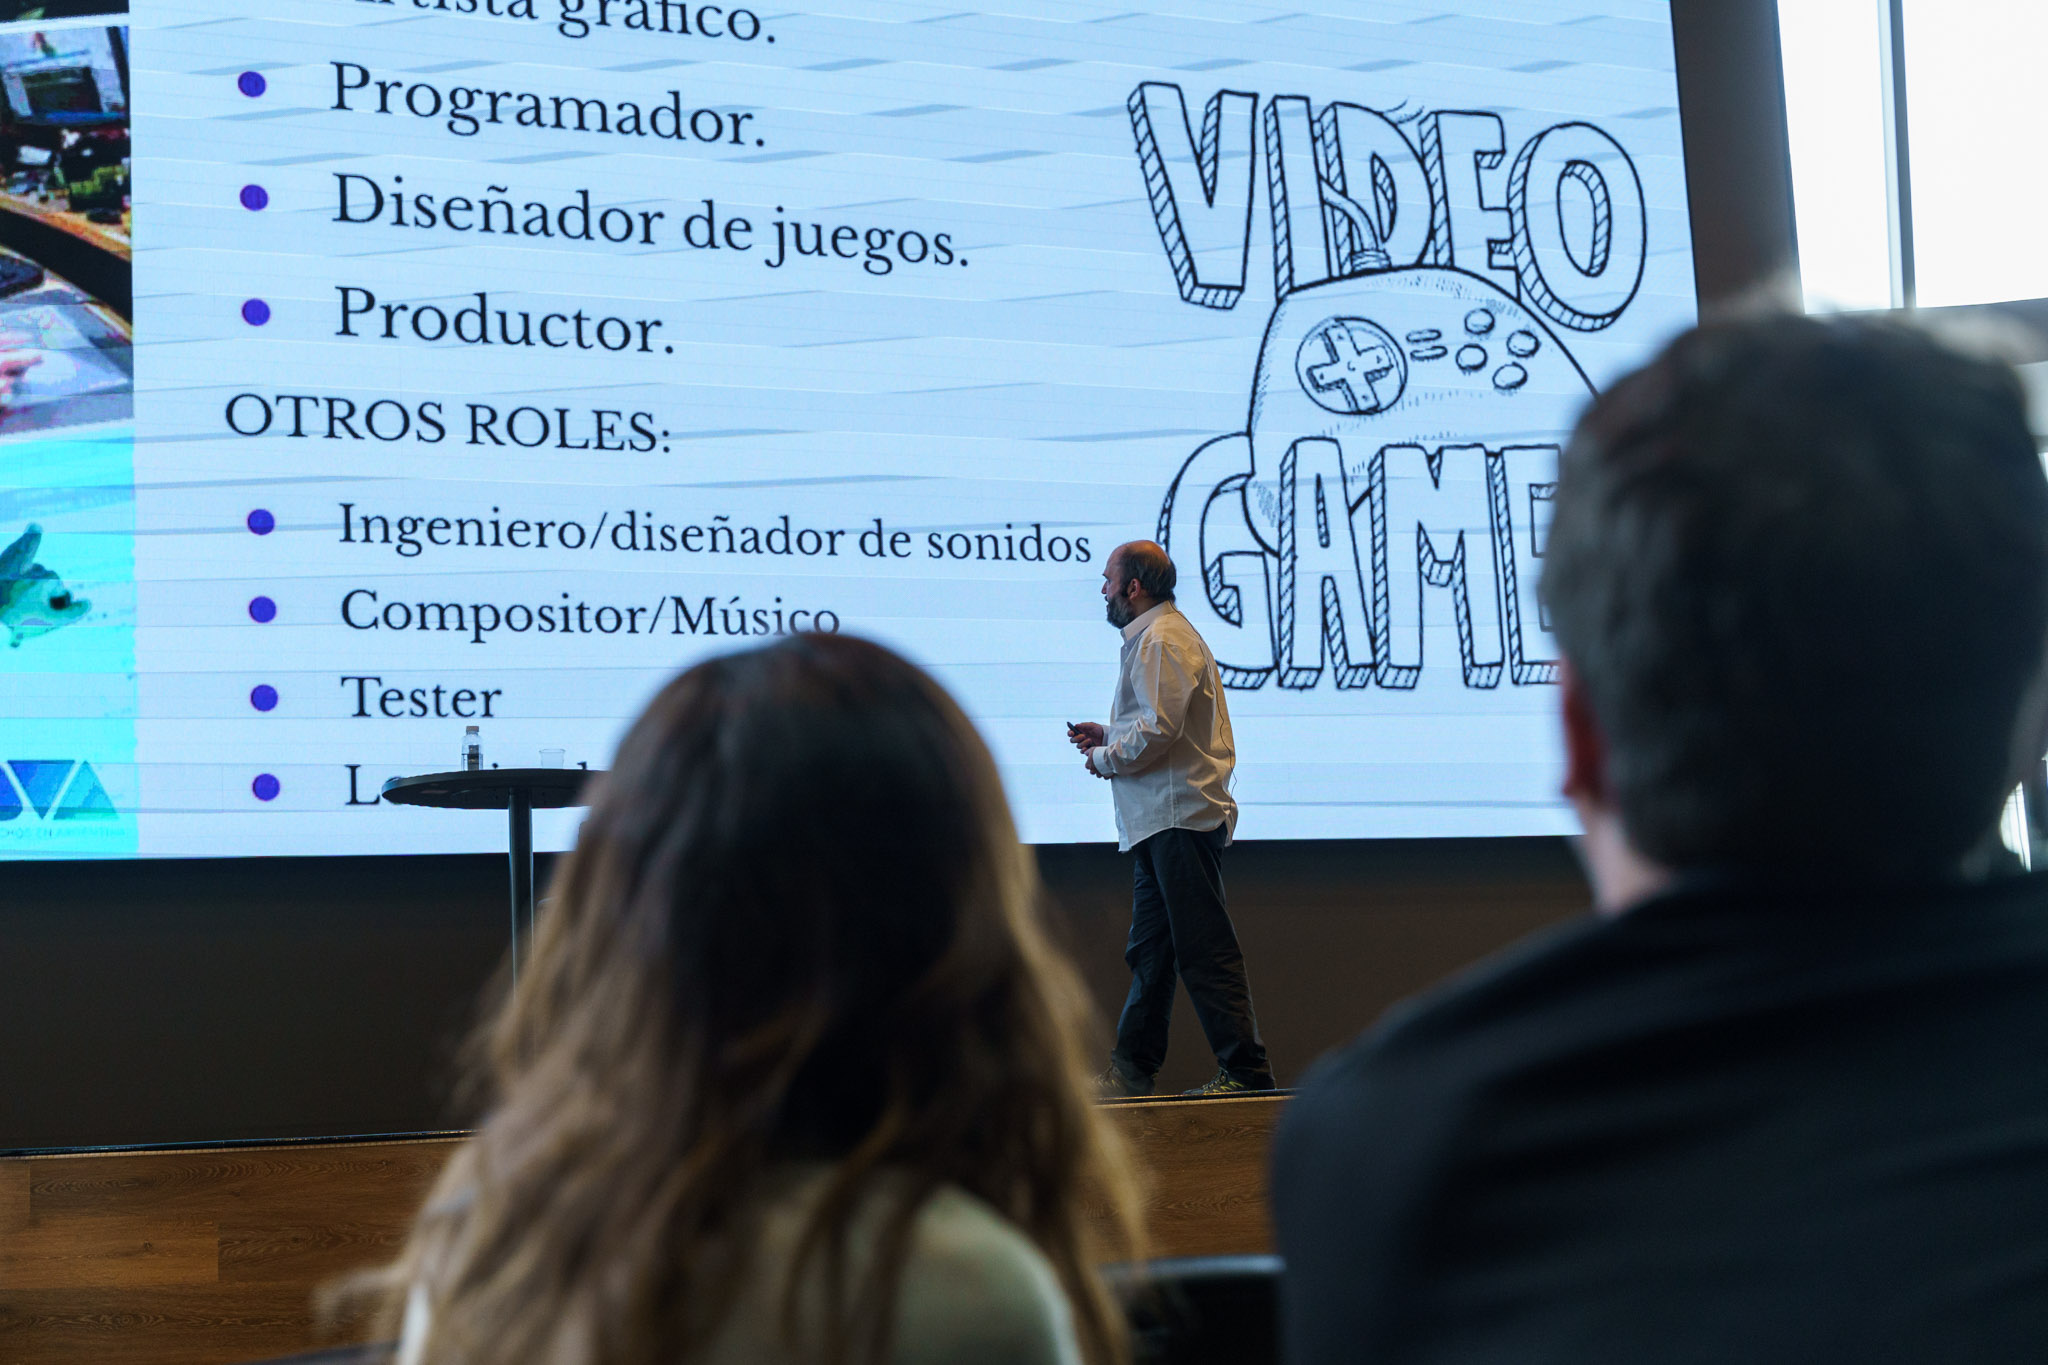 Satélite Videojuegos, un espacio para impulsar políticas en un sector estratégico de las industrias culturales